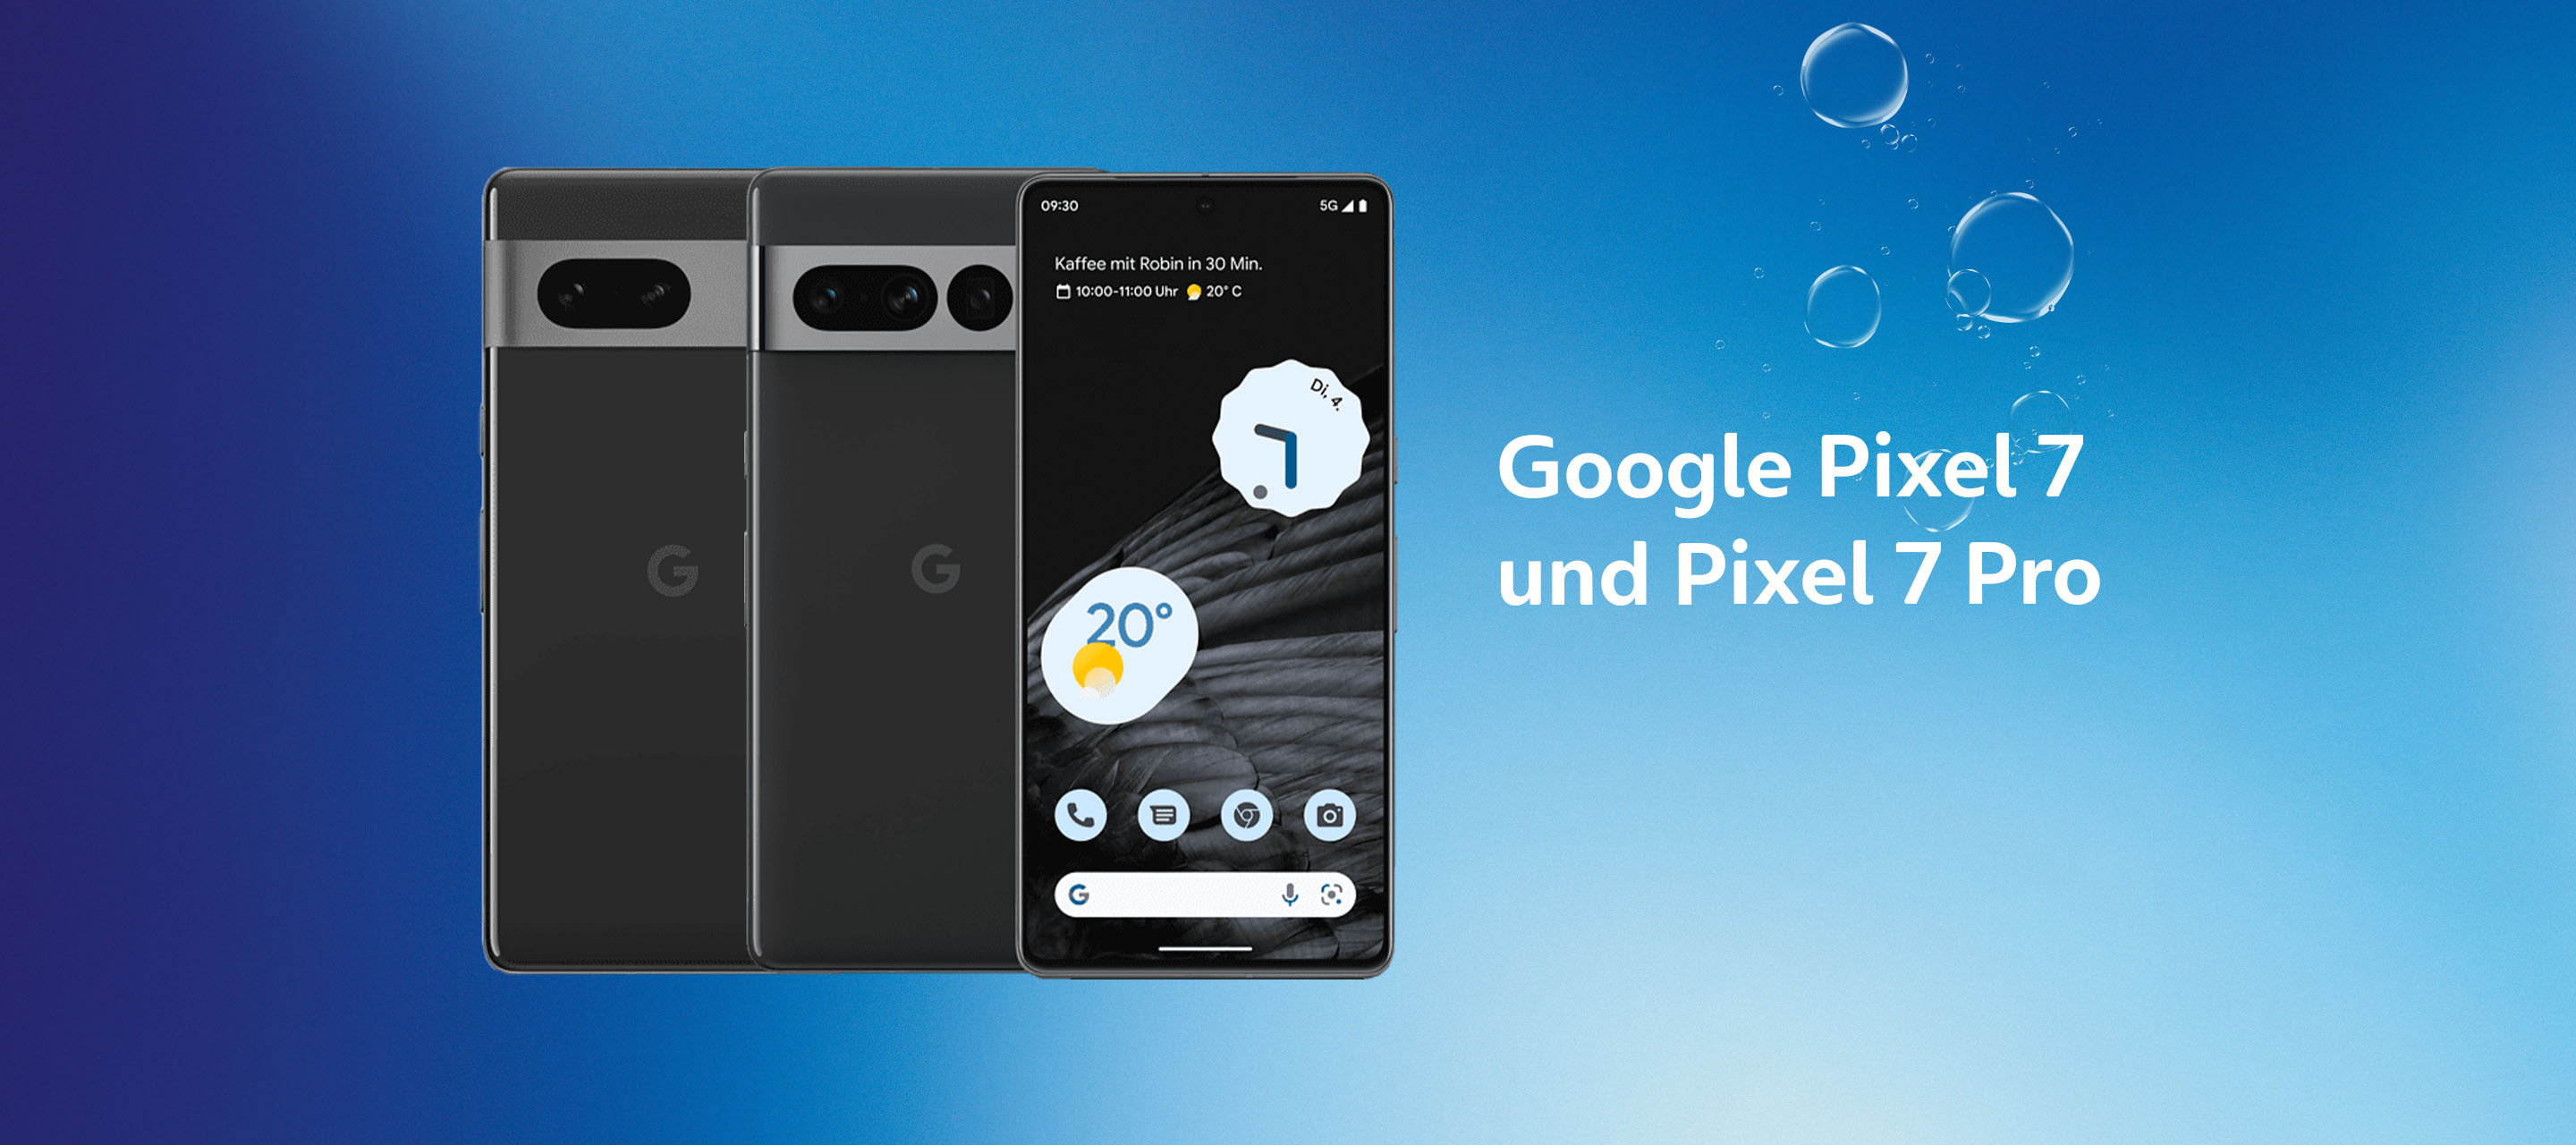 Jetzt erhältlich: Google Pixel 7 und Pixel 7 Pro